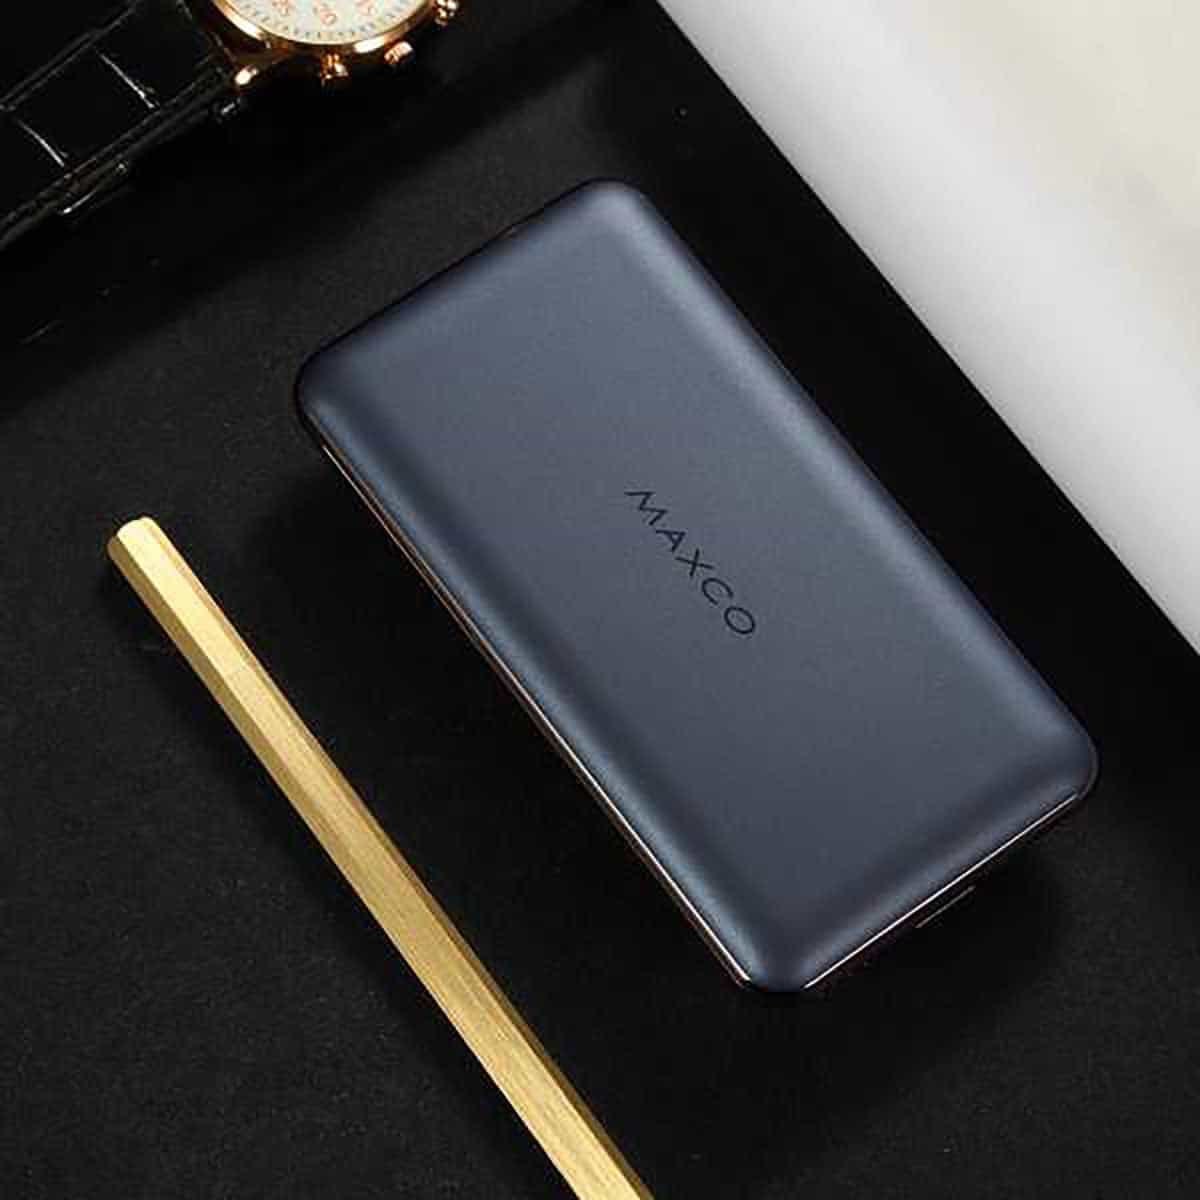 MAXCO MP-10000A Power Bank 10000mAh Chargeur portable Chargeur de sauvegarde ultra-compact Sortie 2.4A Charge haute vitesse pour iPhone iPad Samsung Galaxy et plus